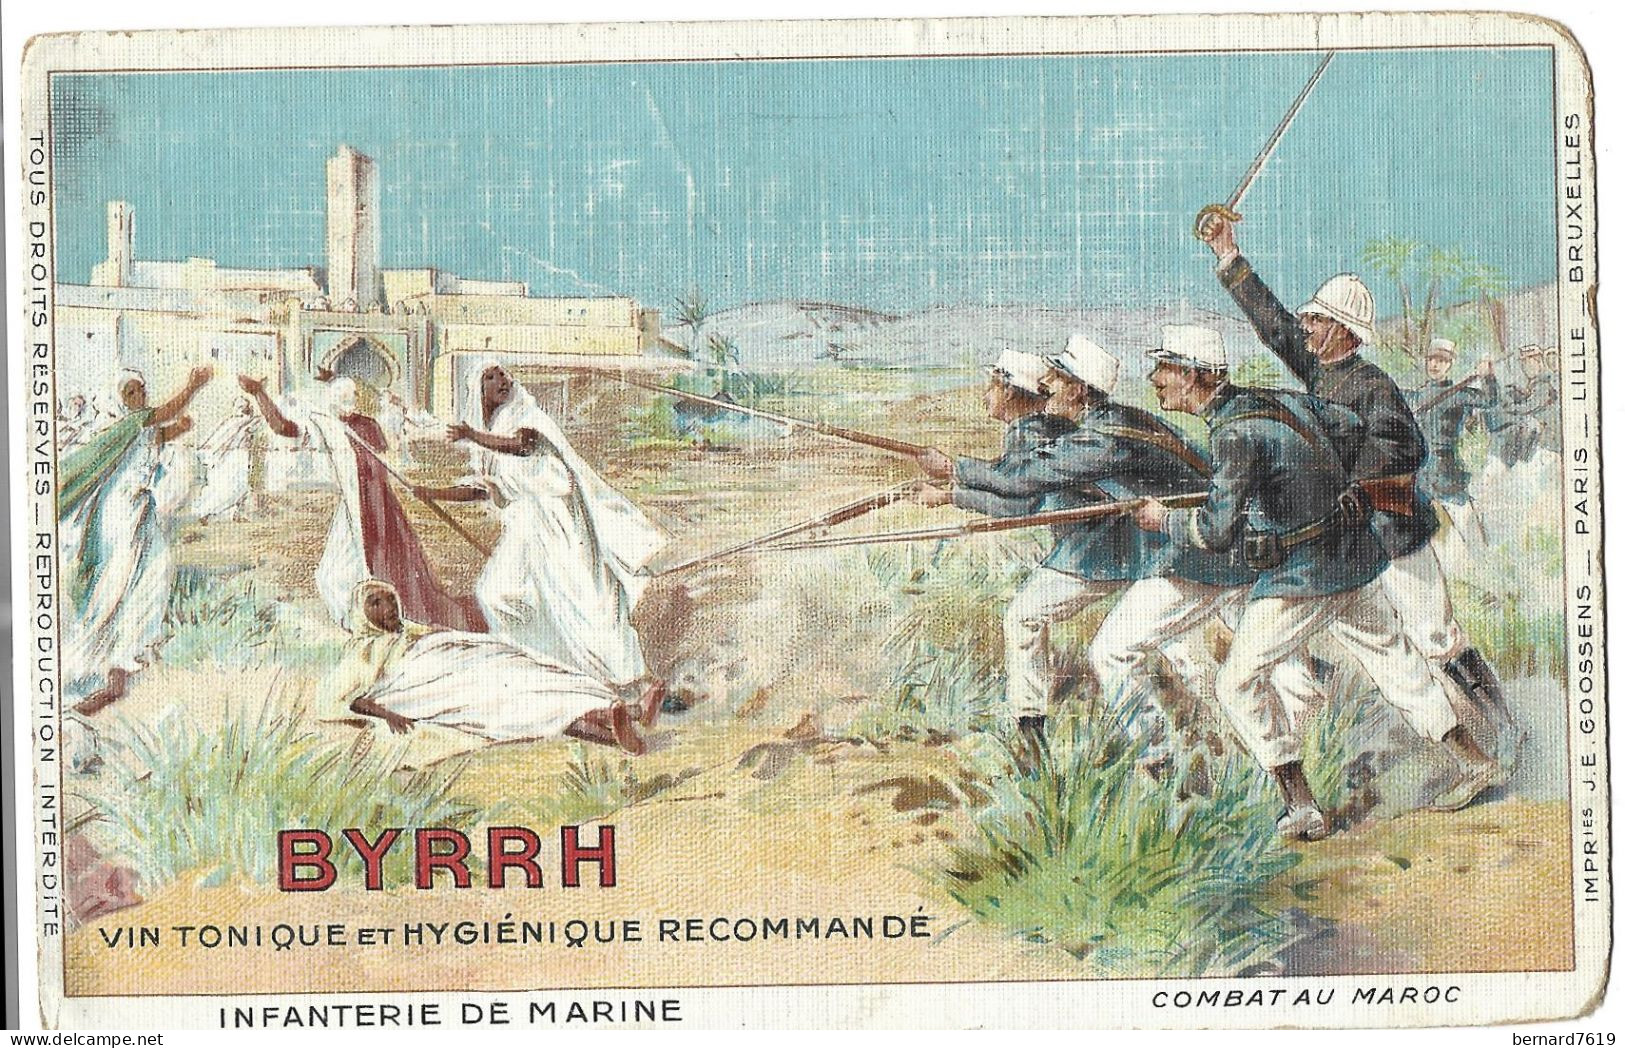 Maroc -  Infanterie De Combat - Byrrh Vin Tonique Et Hygienique Recommande - Casablanca